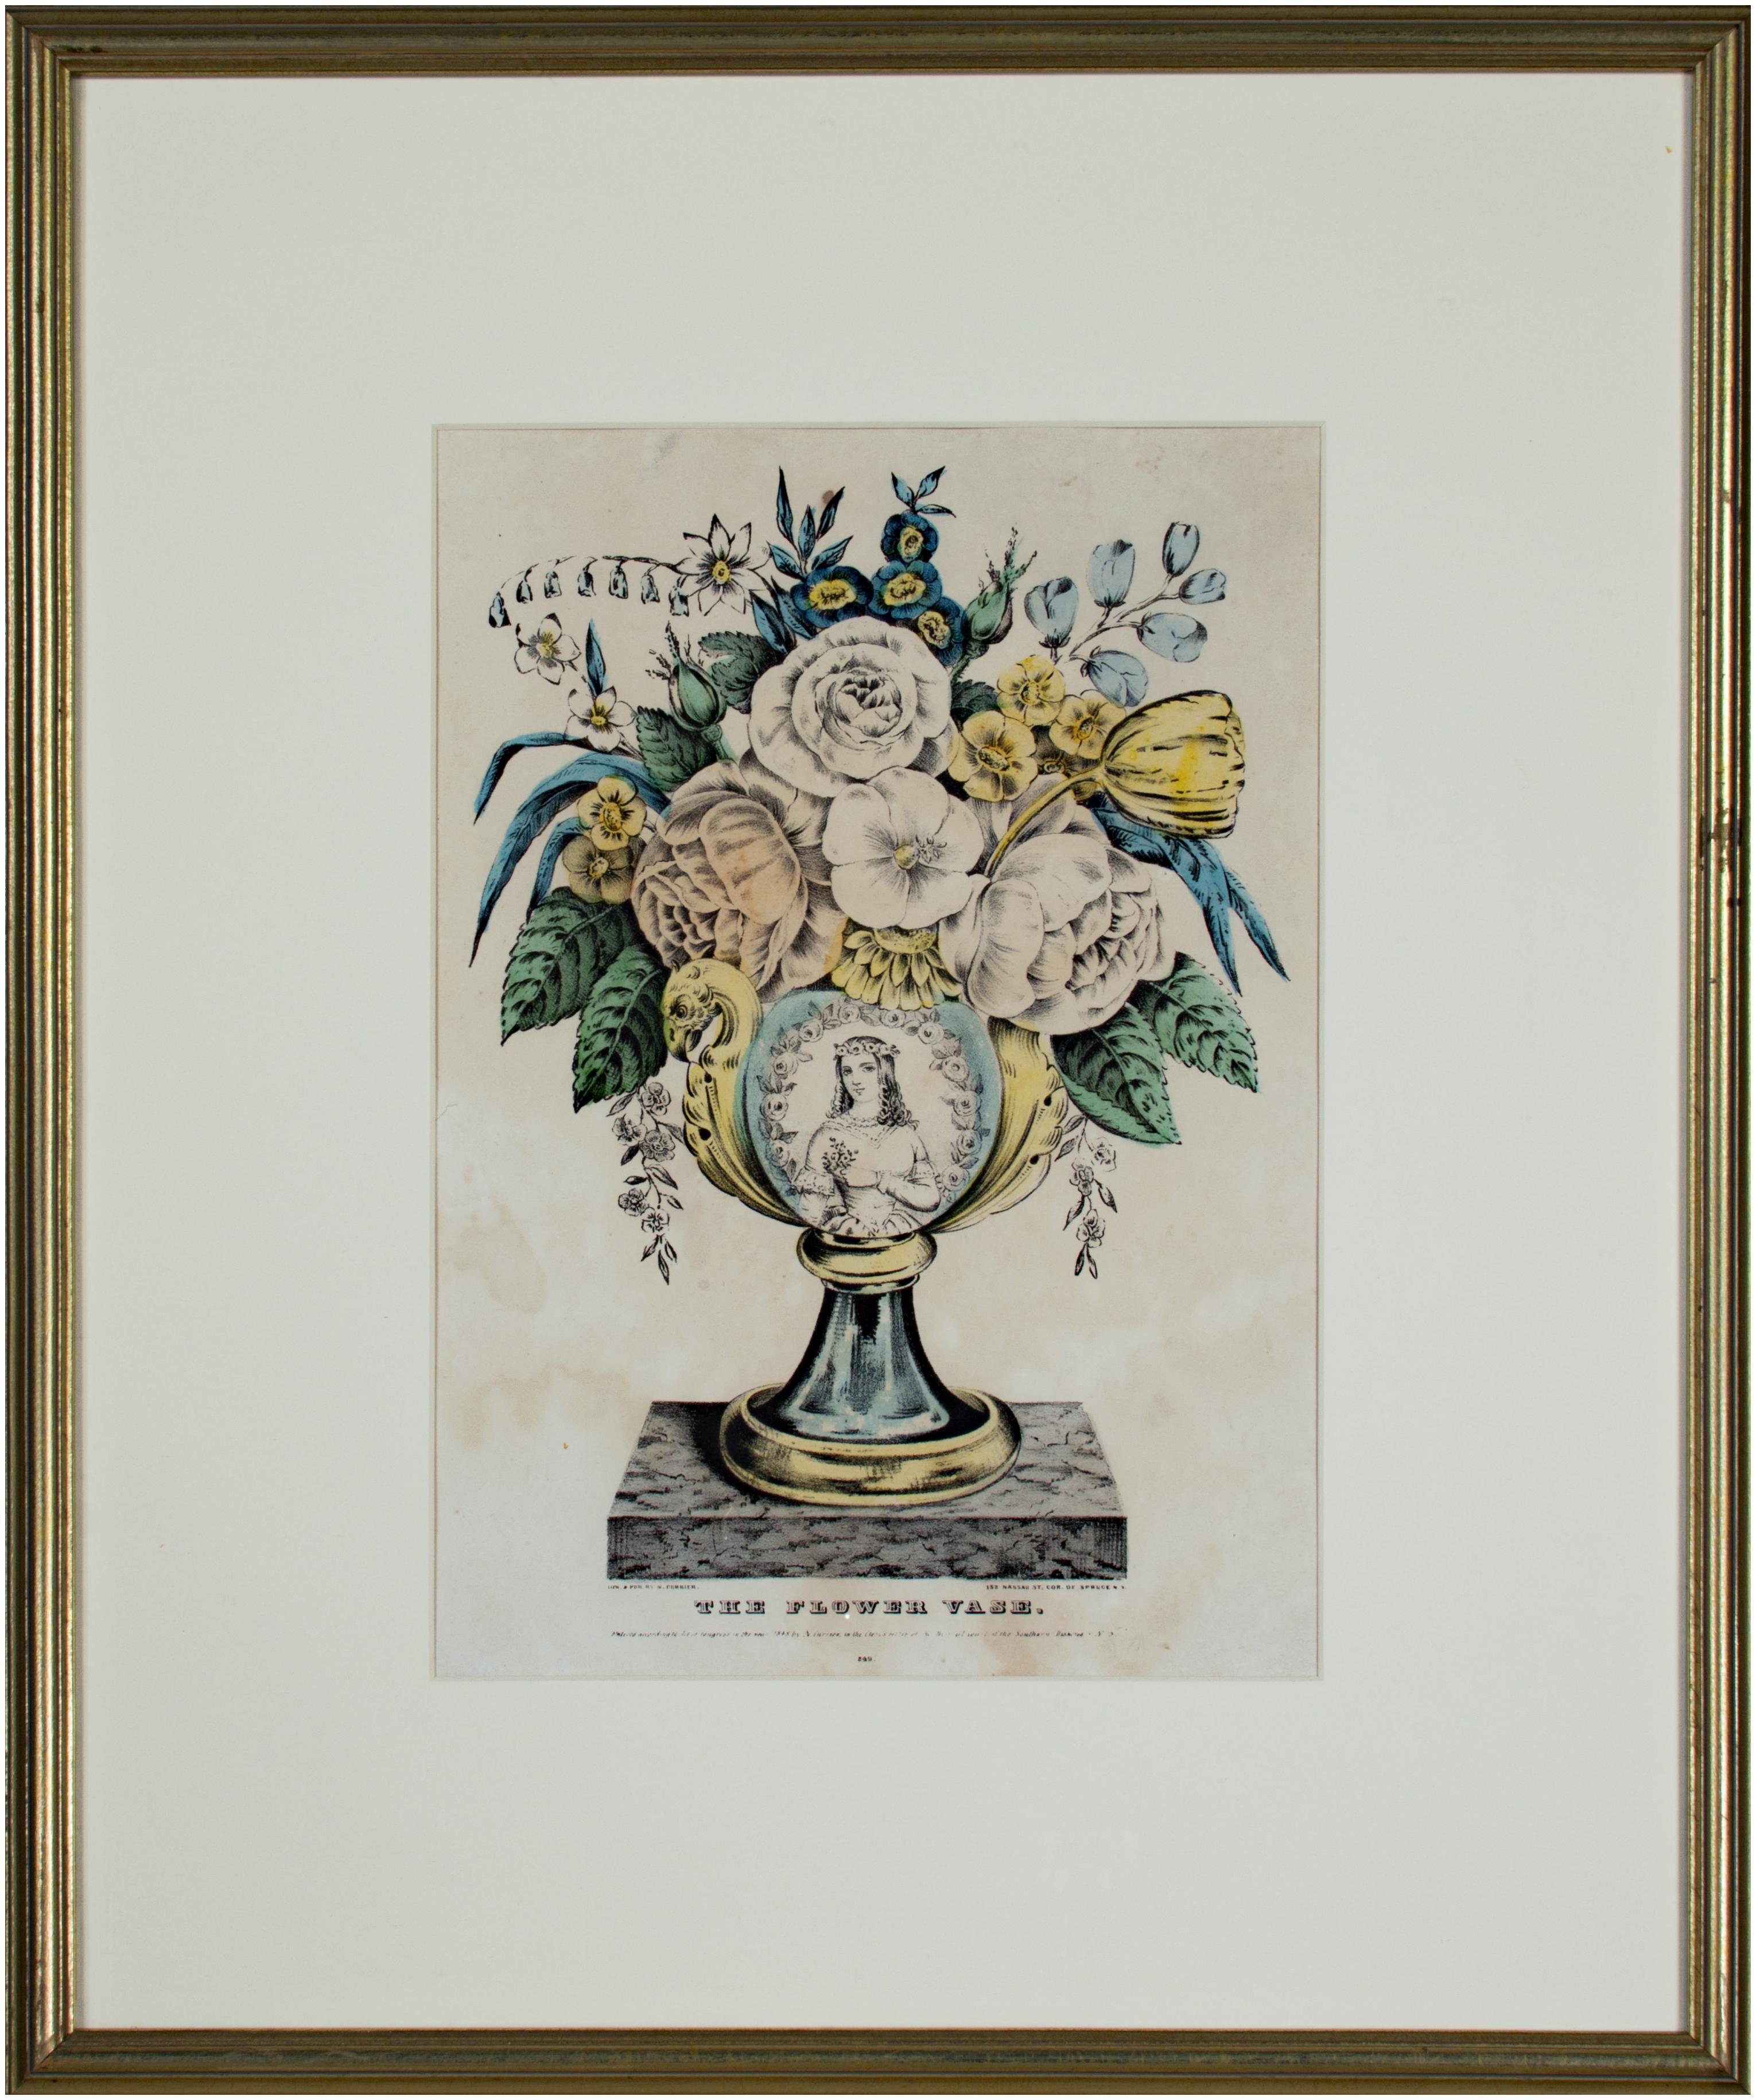 Die vorliegende handkolorierte Lithografie ist eine von mehreren dekorativen Abbildungen von mit Blumen gefüllten Vasen, die von Nathaniel Currier veröffentlicht wurden. Dieses Beispiel enthält Rosen, Tulpen, Vergissmeinnicht und anderes in einer